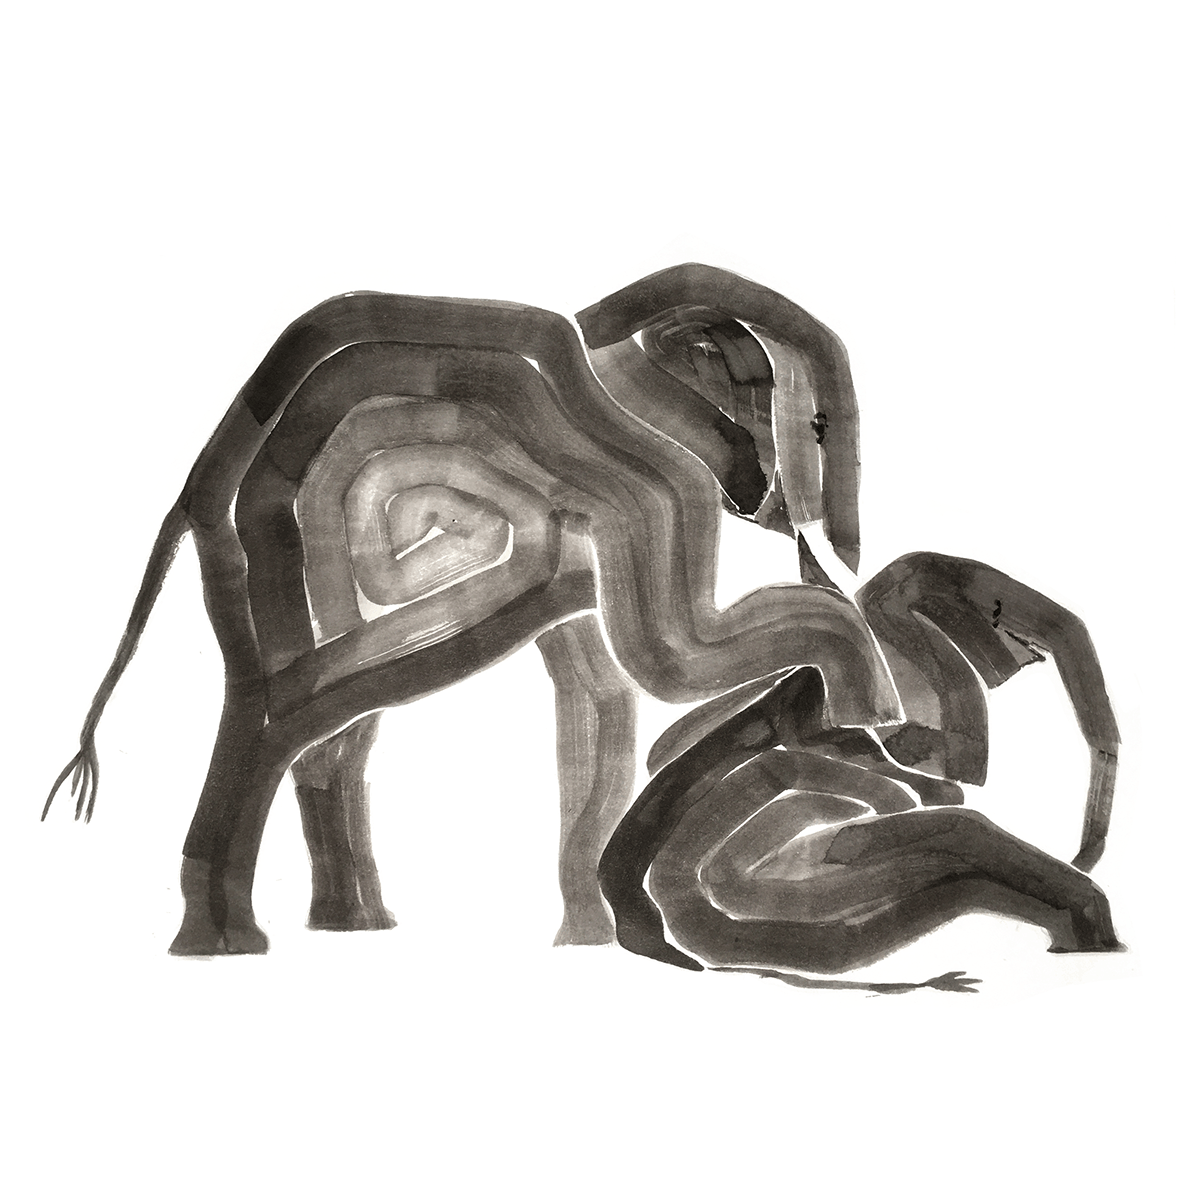 Drunk elephants